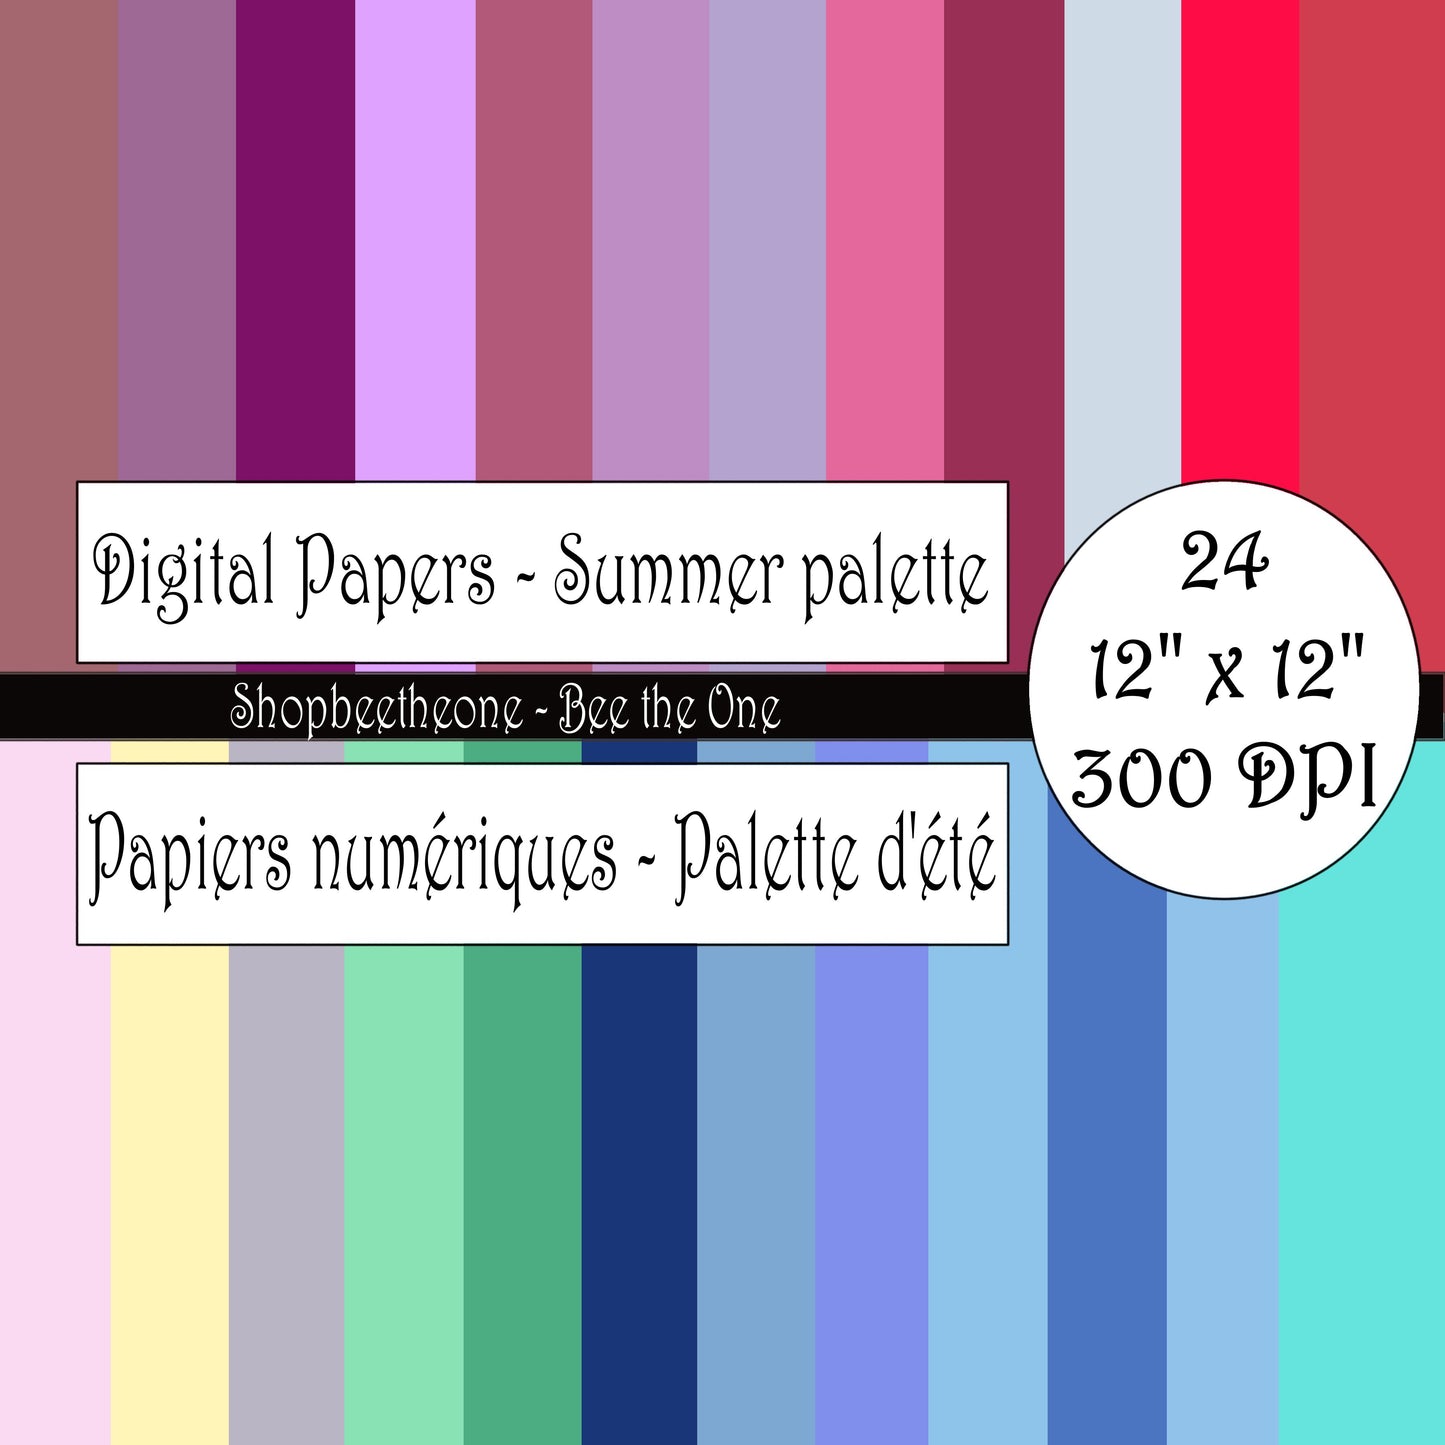 Papiers numériques "Palette d'Eté" - 12" x 12" - 300 DPI - Set de 24 images - A télécharger